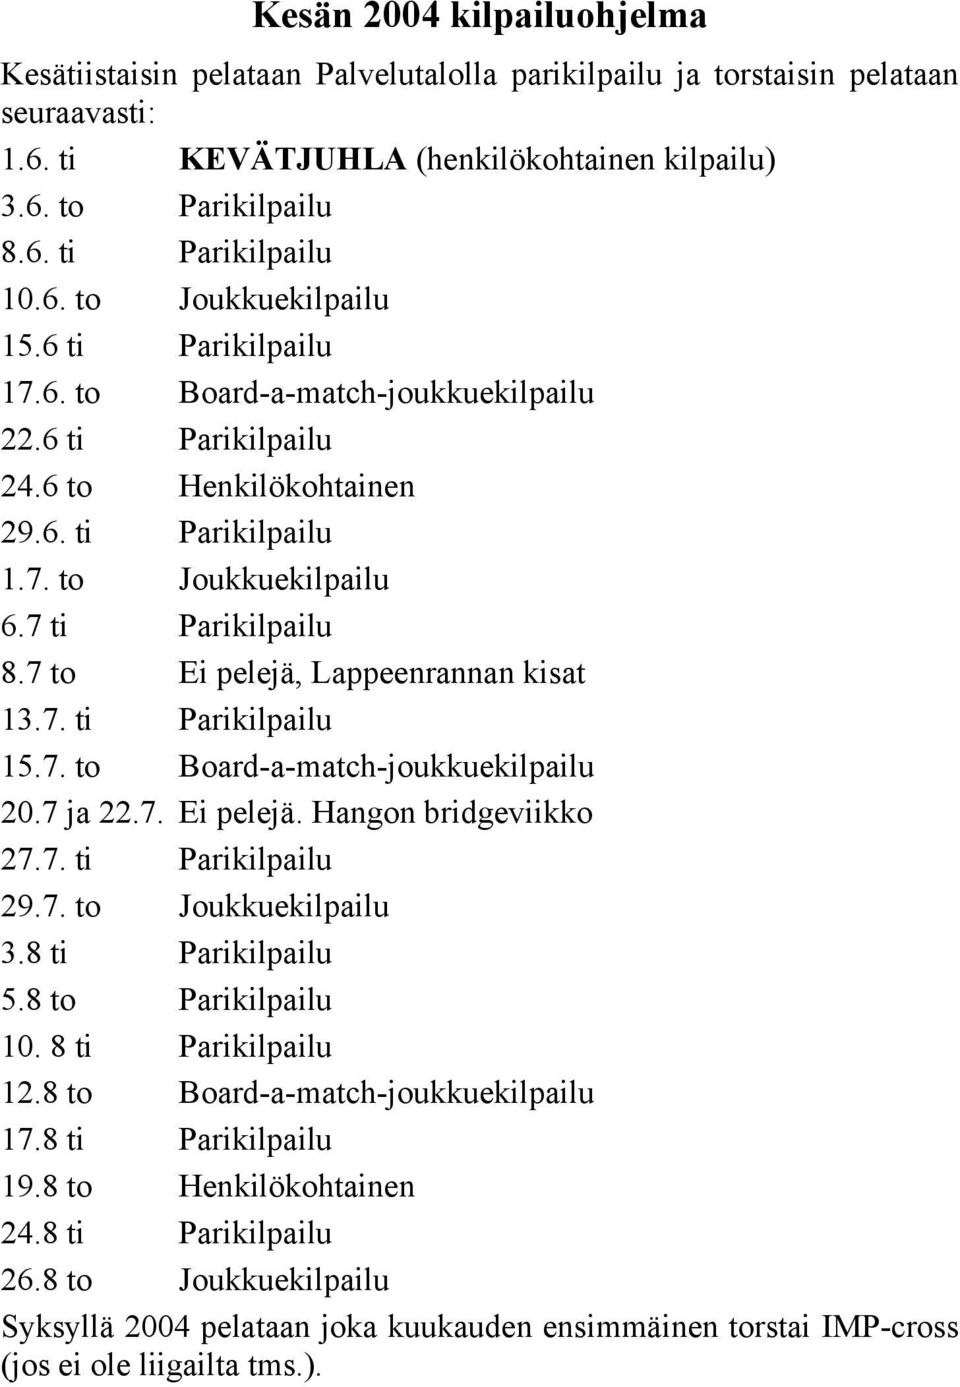 7 to Ei pelejä, Lappeenrannan kisat 13.7. ti Parikilpailu 15.7. to Board-a-match-joukkuekilpailu 20.7 ja 22.7. Ei pelejä. Hangon bridgeviikko 27.7. ti Parikilpailu 29.7. to Joukkuekilpailu 3.